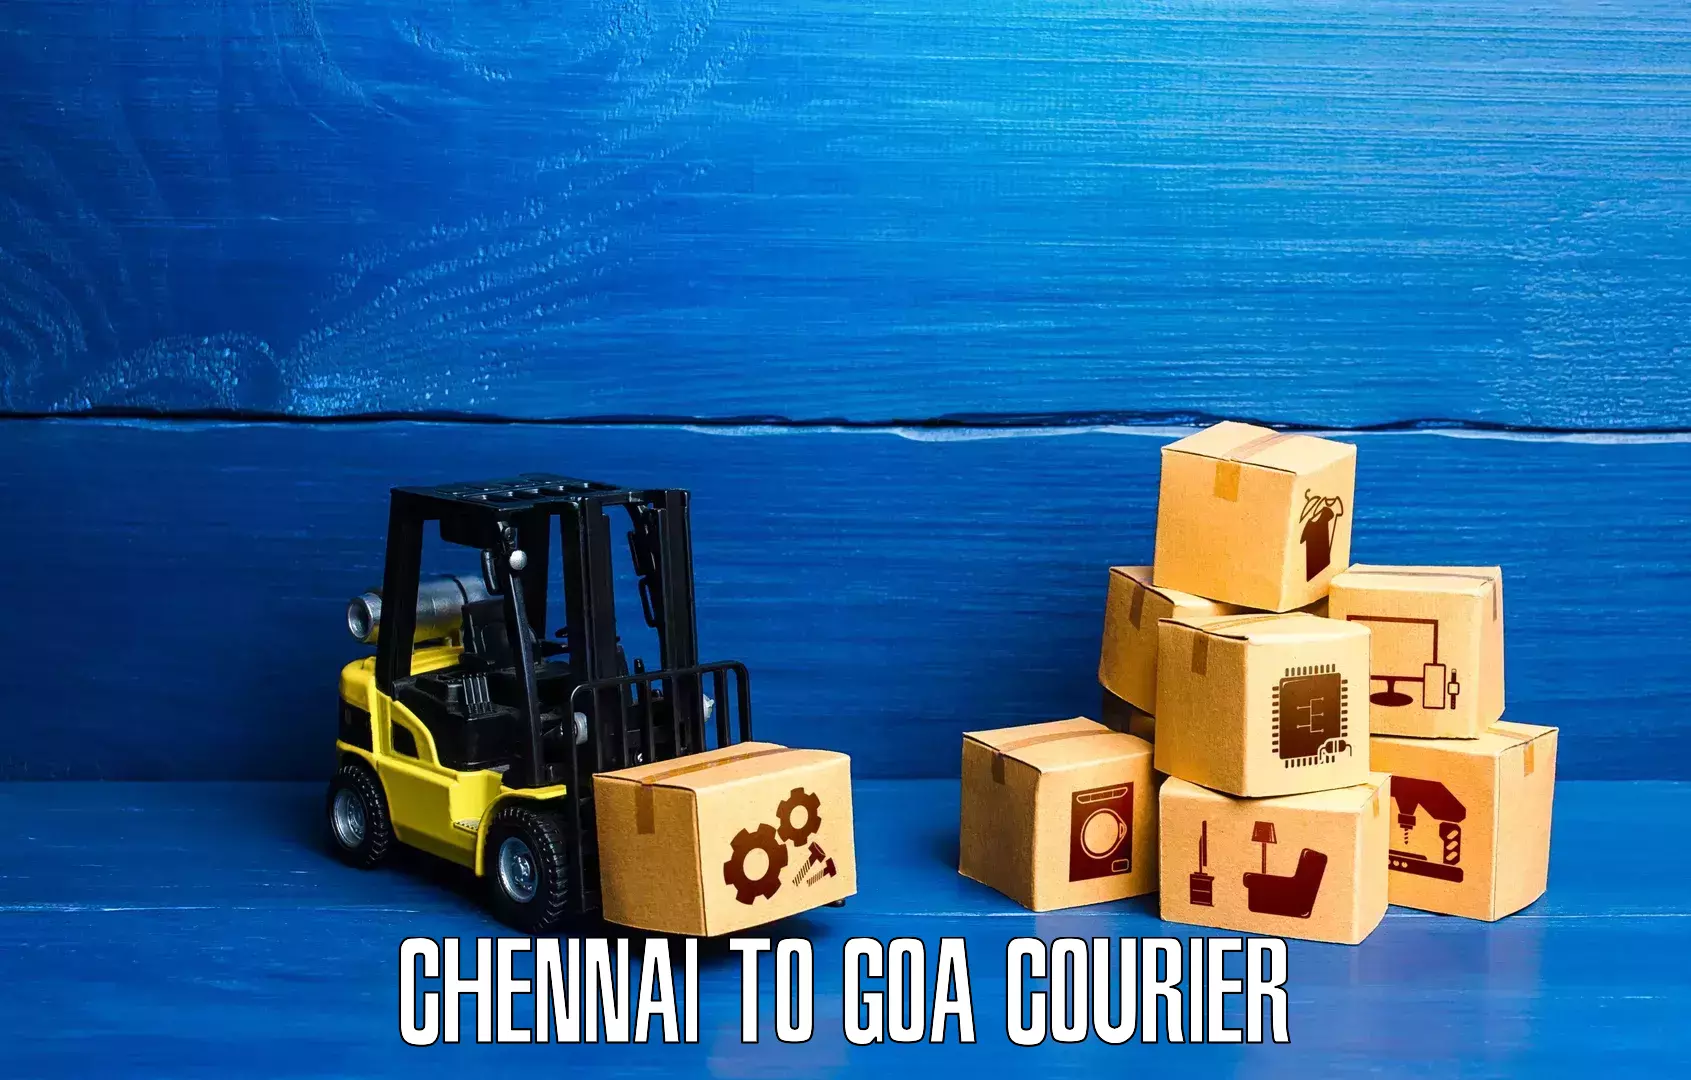 Express logistics service Chennai to Goa